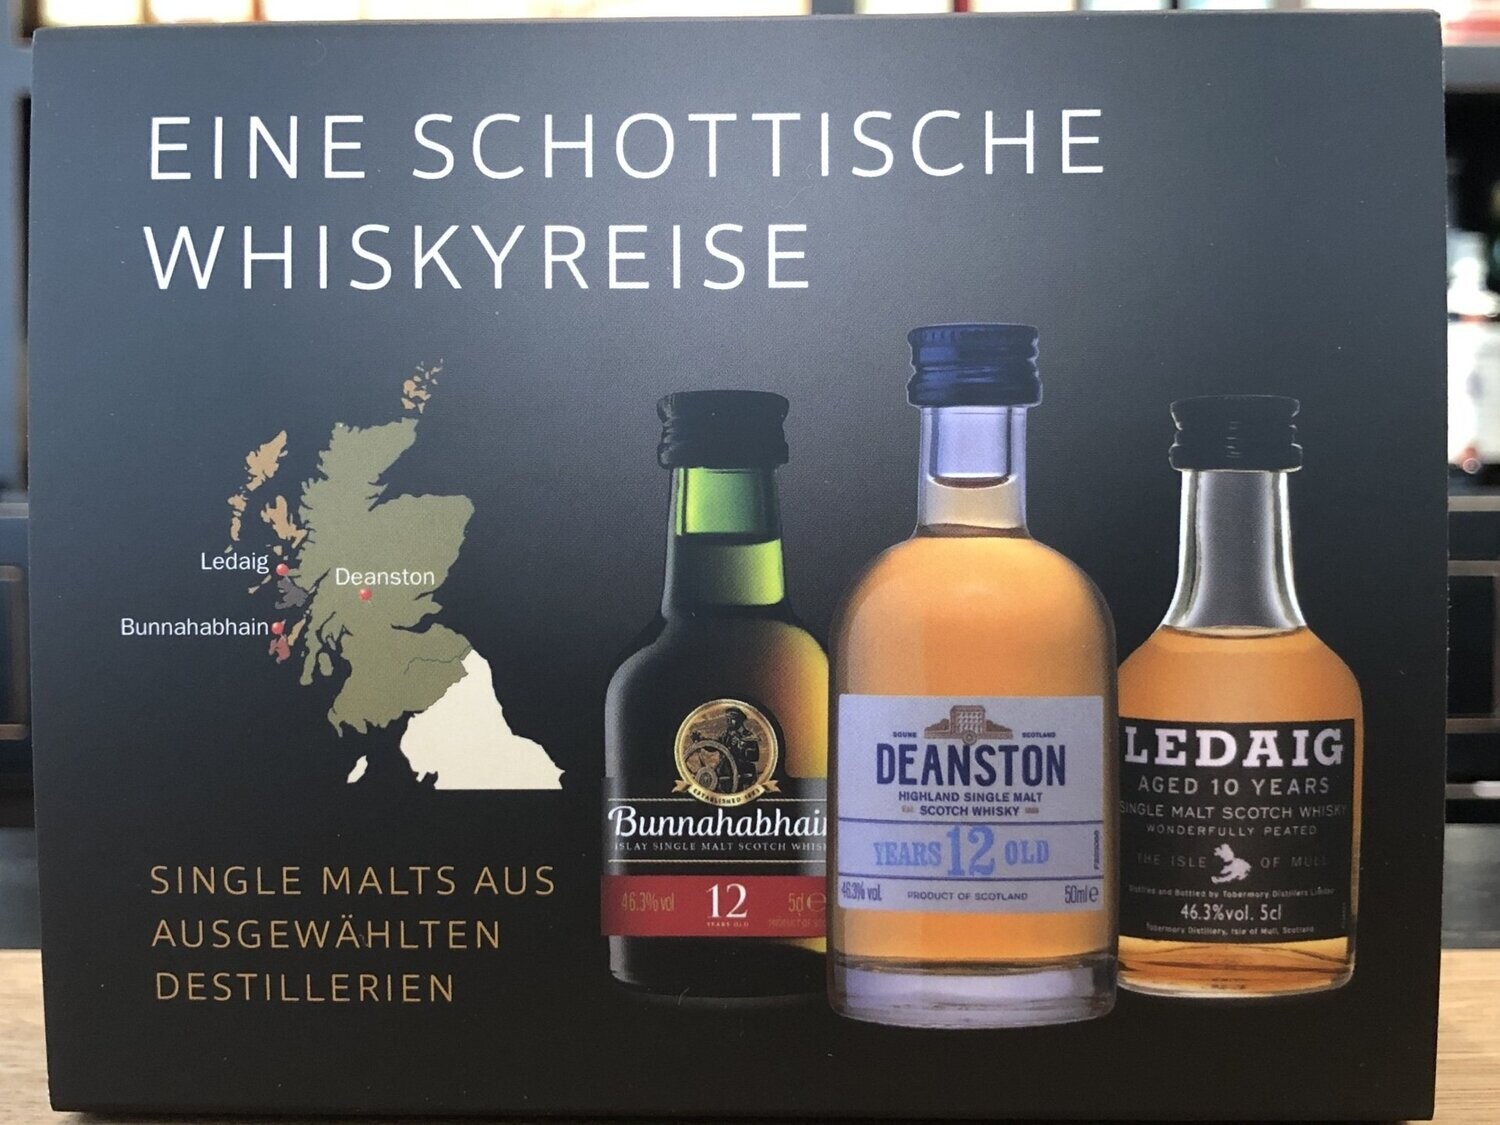 Miniaturenset Eine Schottische Whiskyreise – Bunnahabhain, Deanston und Ledaig